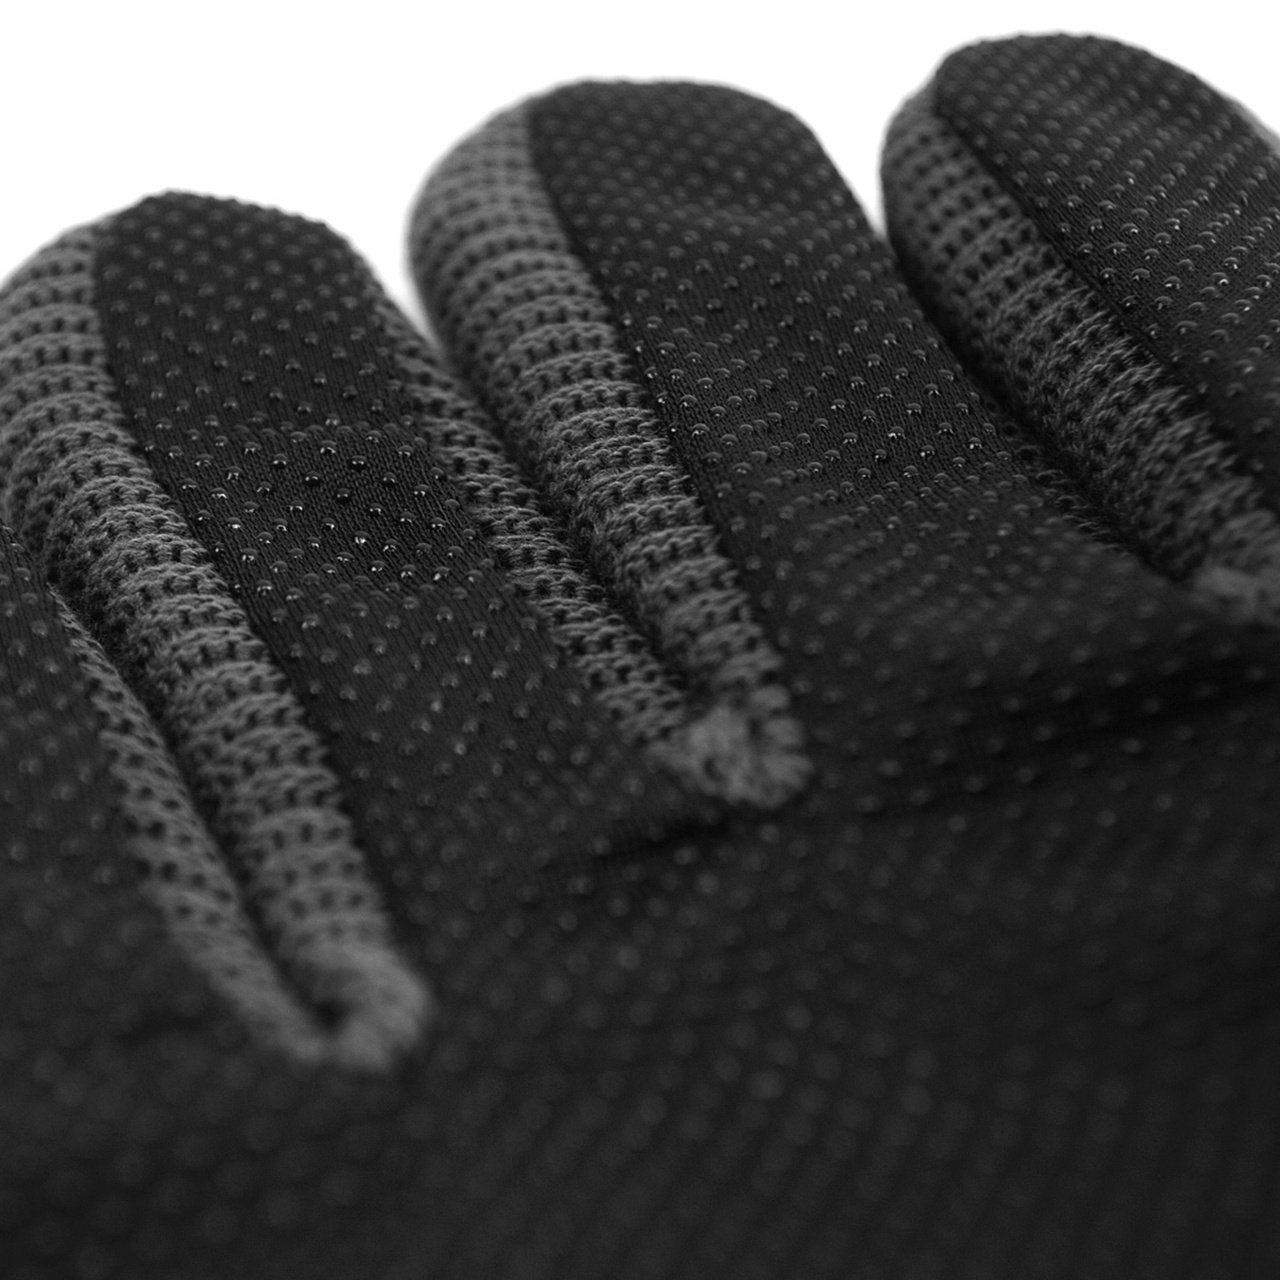 Gotstyle Fashion - Westend Gloves Genuine Leather Non-Slip Winter Gloves - Black